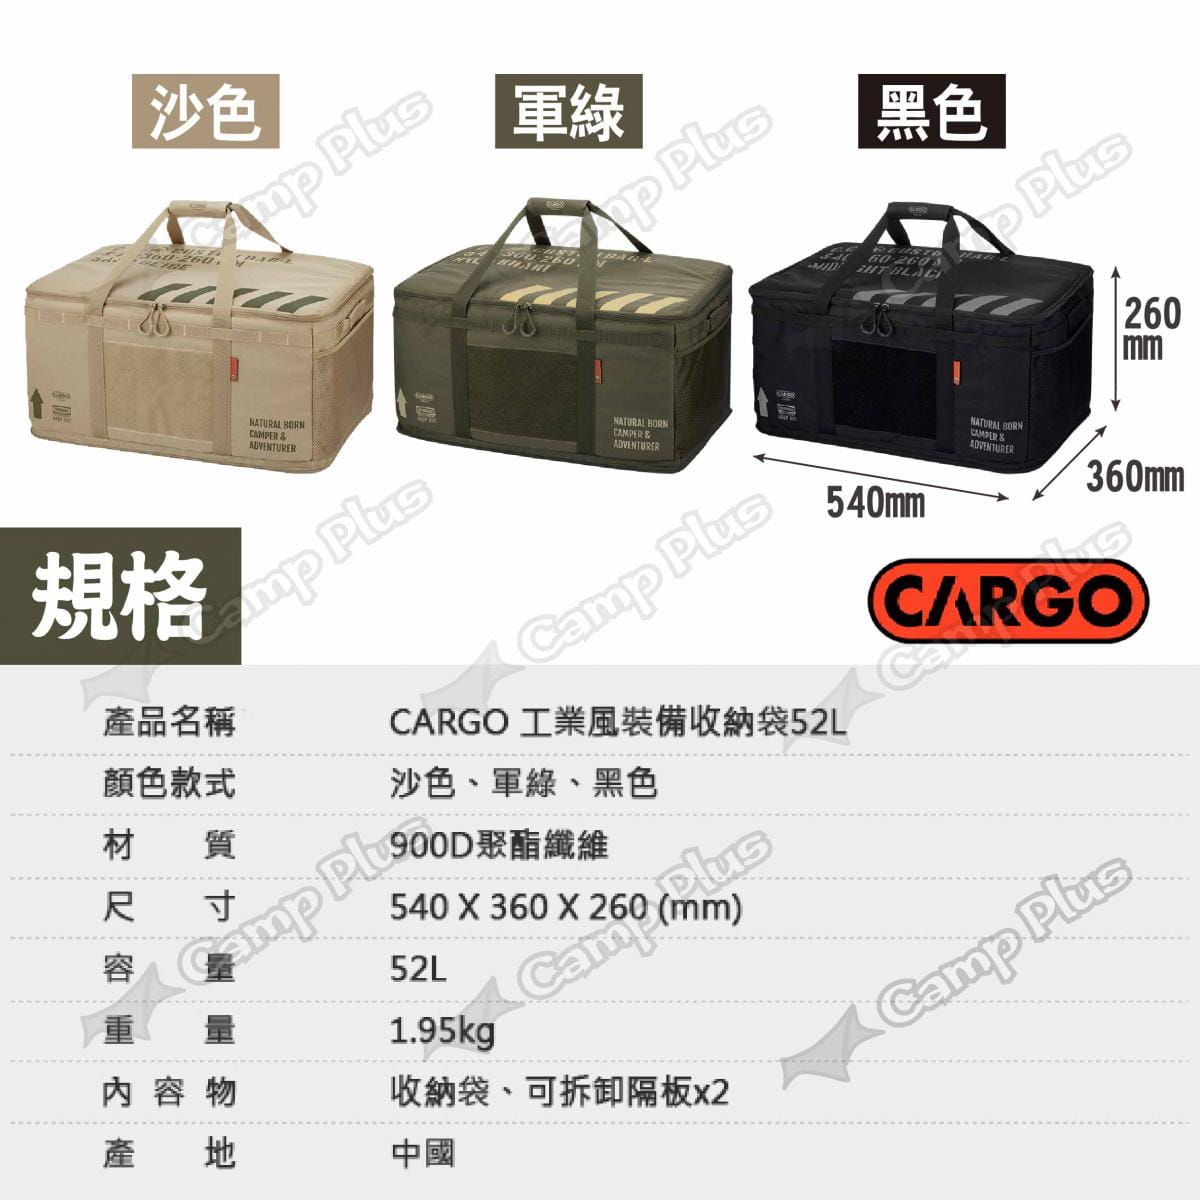 【CARGO】工業風裝備收納袋52L 悠遊戶外 9